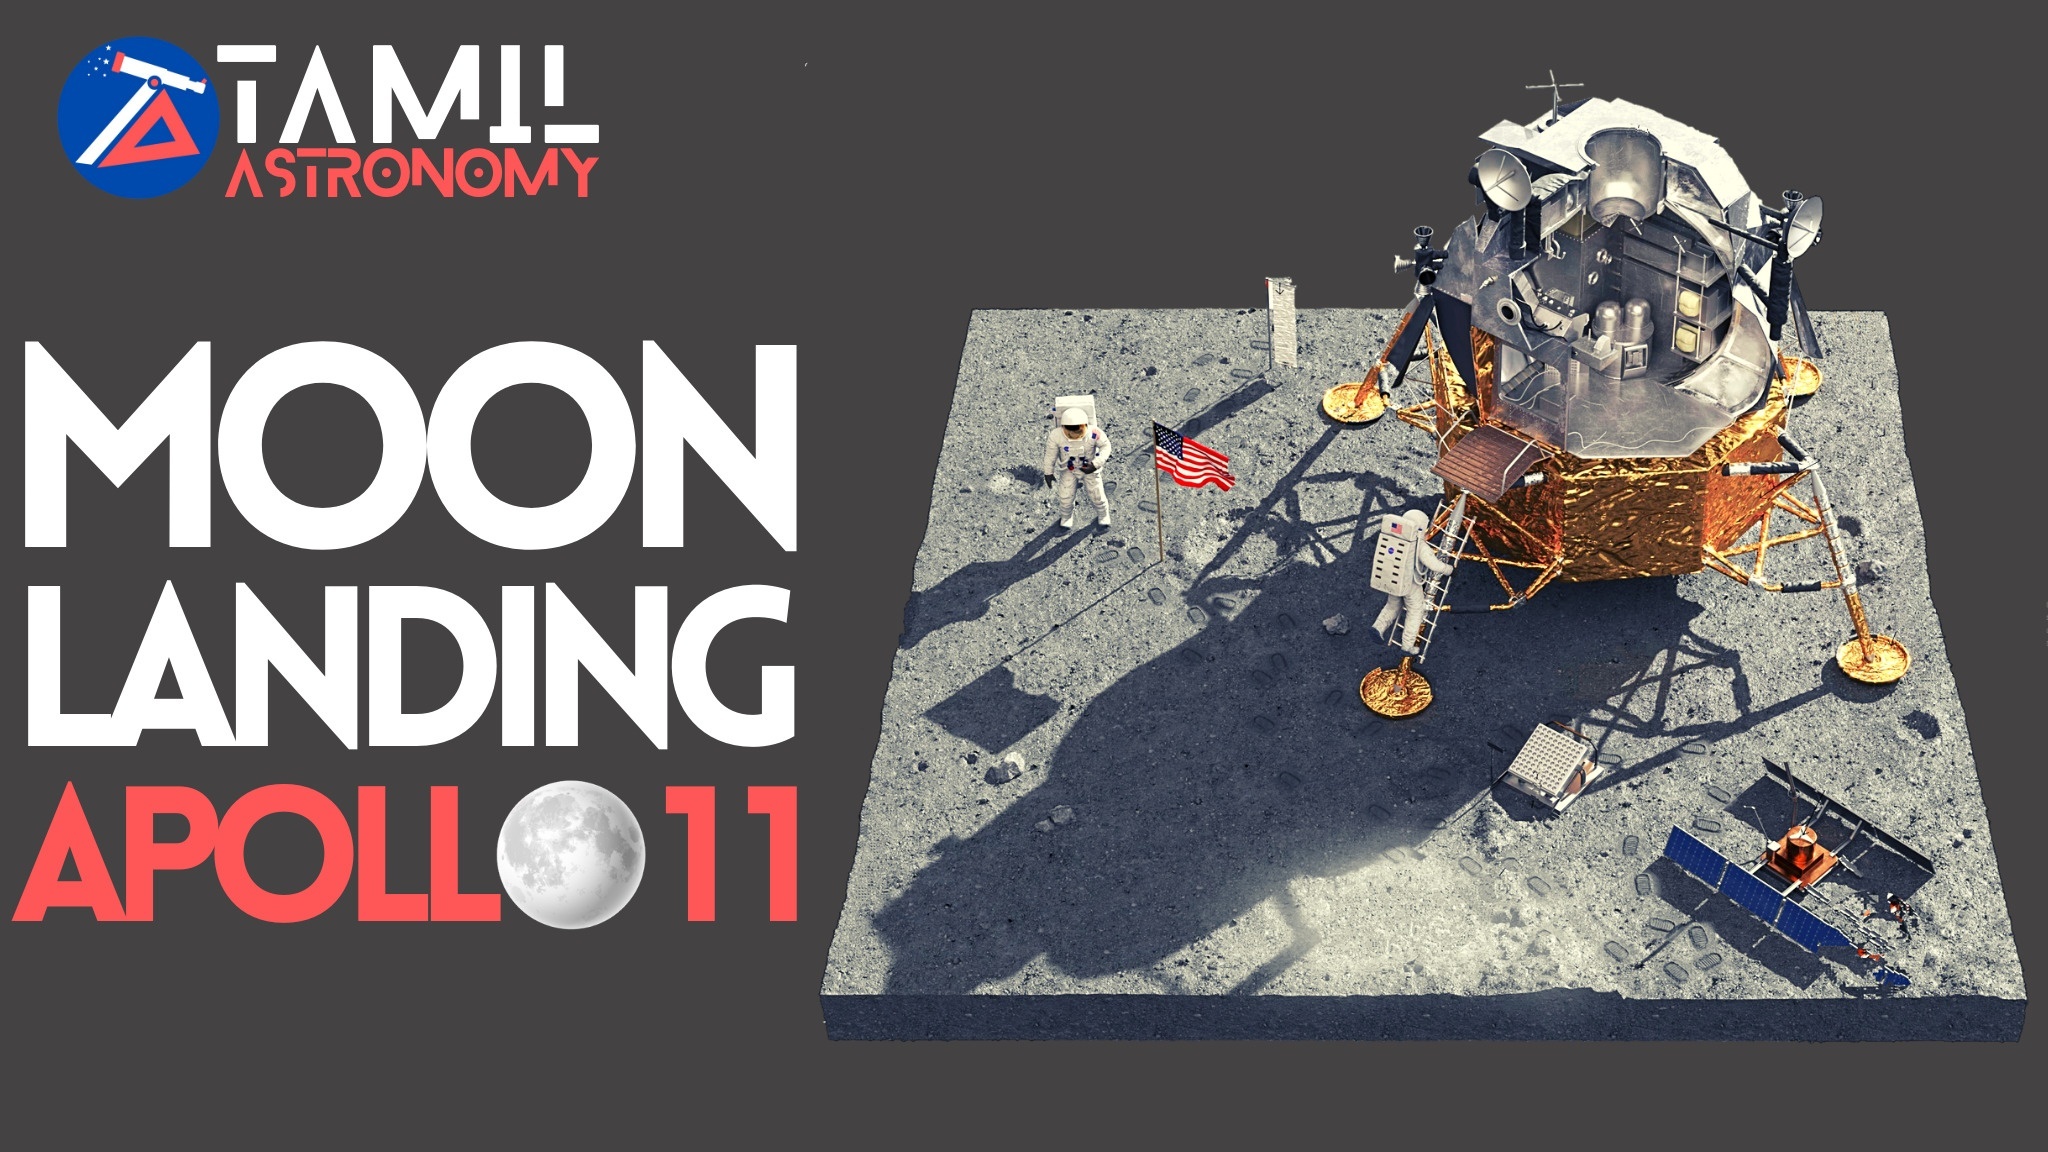 The Moon landing Apollo 11